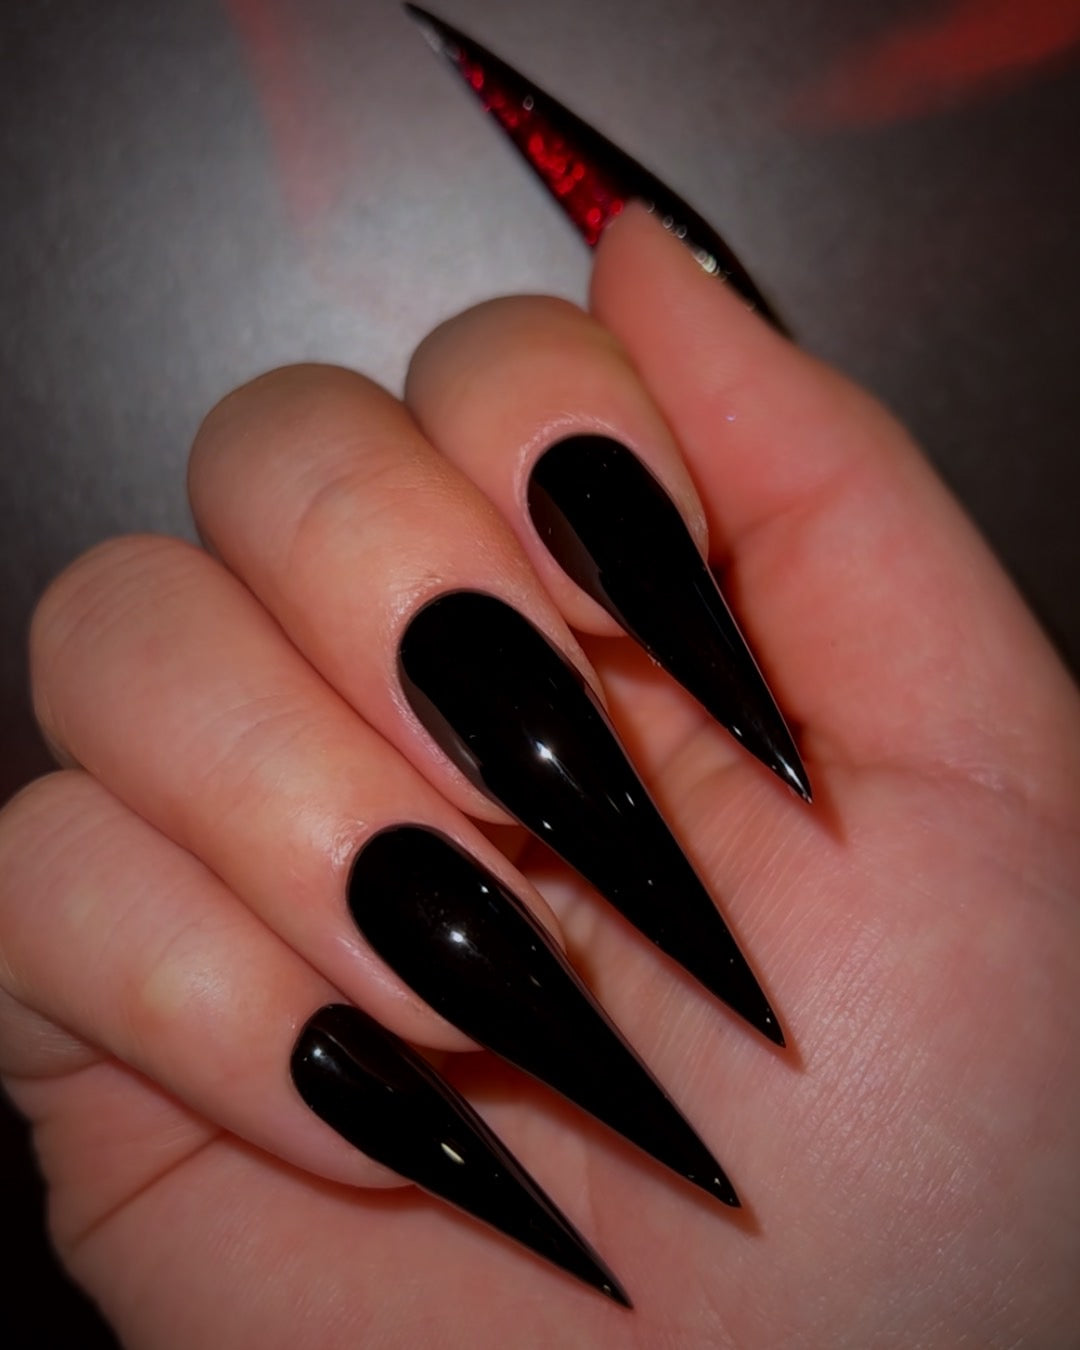 christina songe add photo black sharp nails